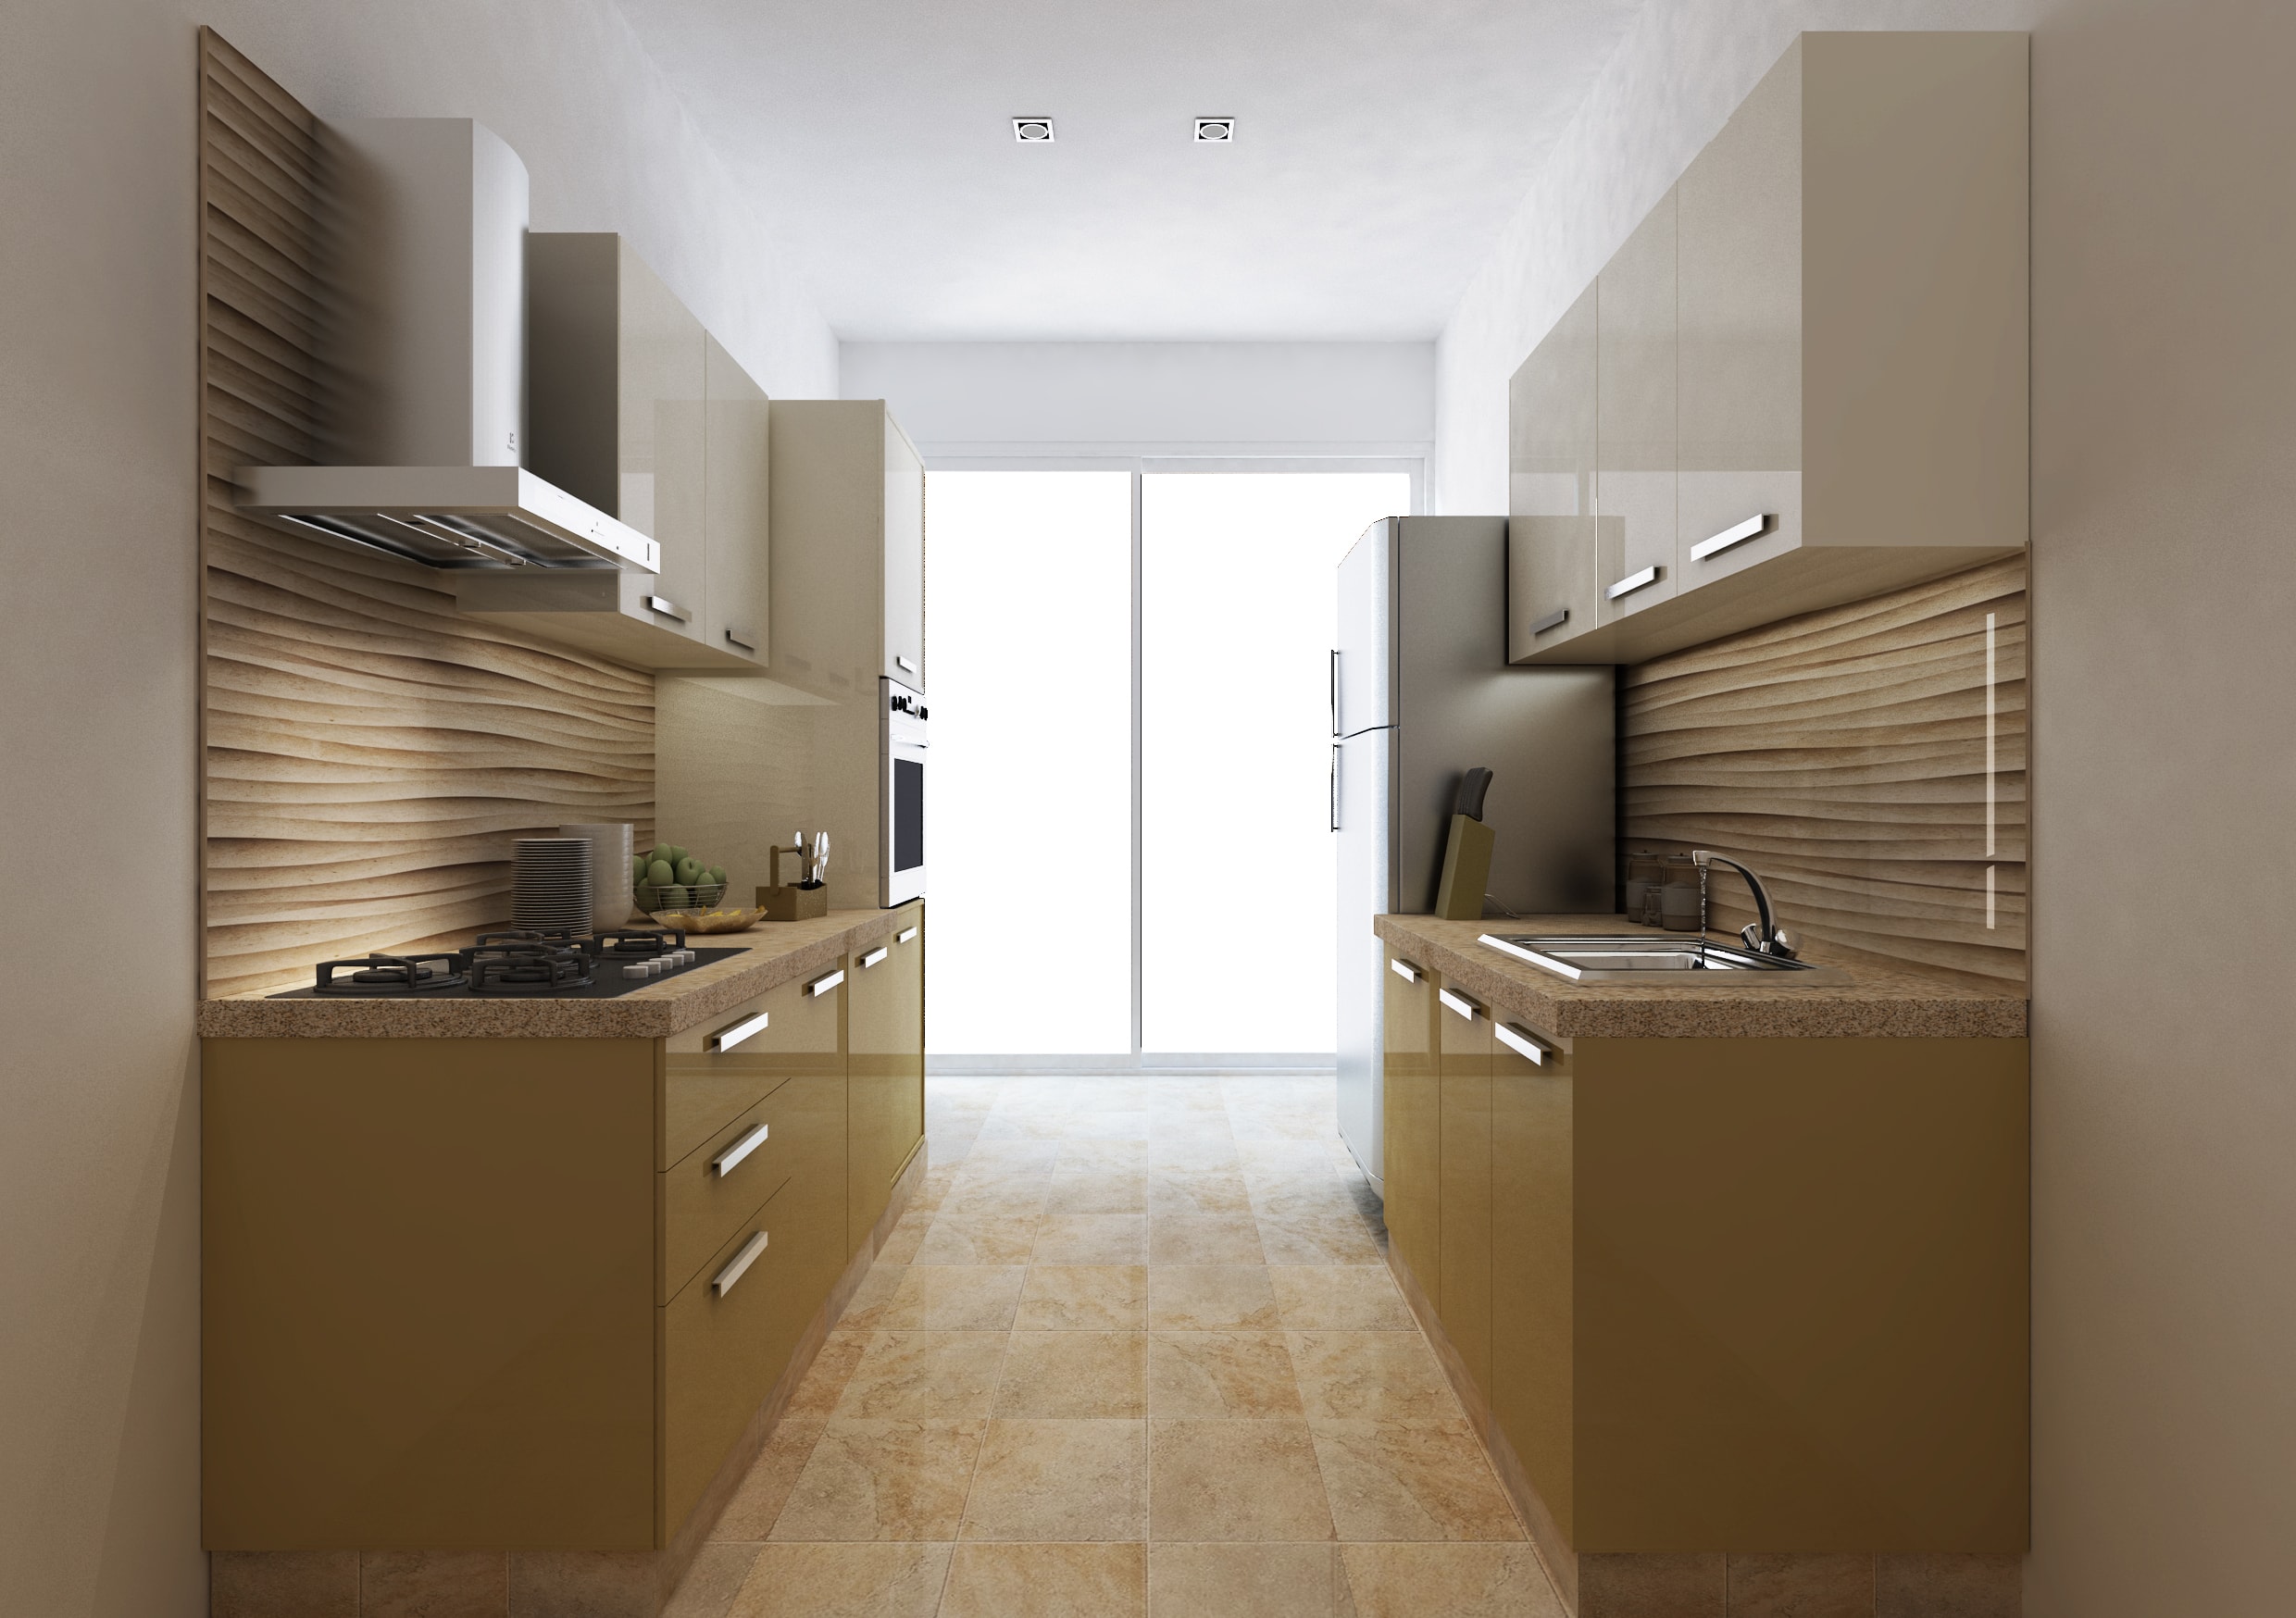 parallel kitchen design layout